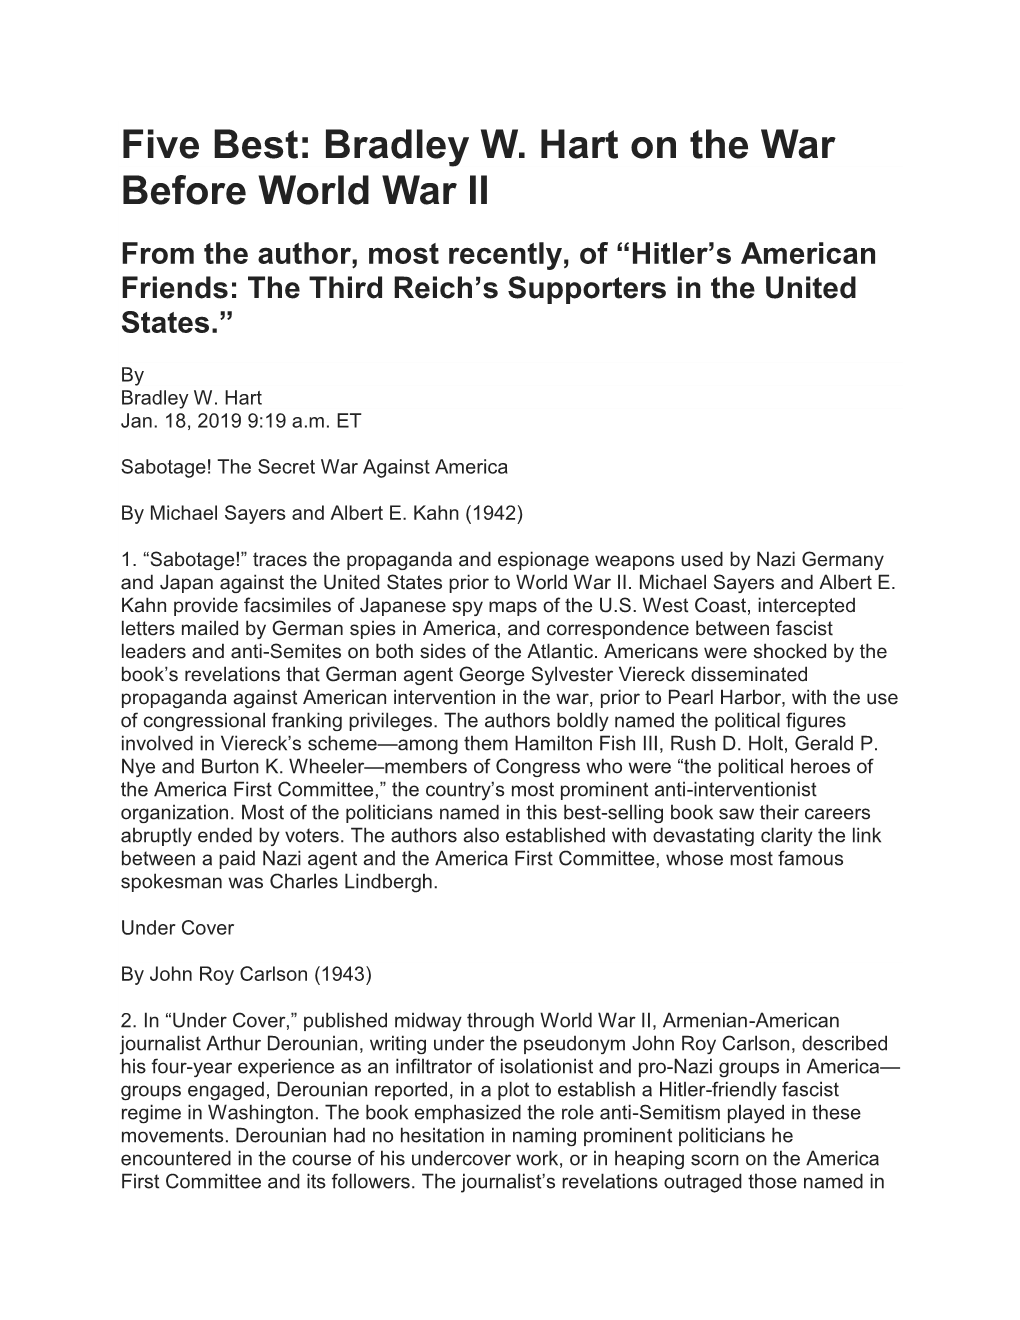 Five Best: Bradley W. Hart on the War Before World War II